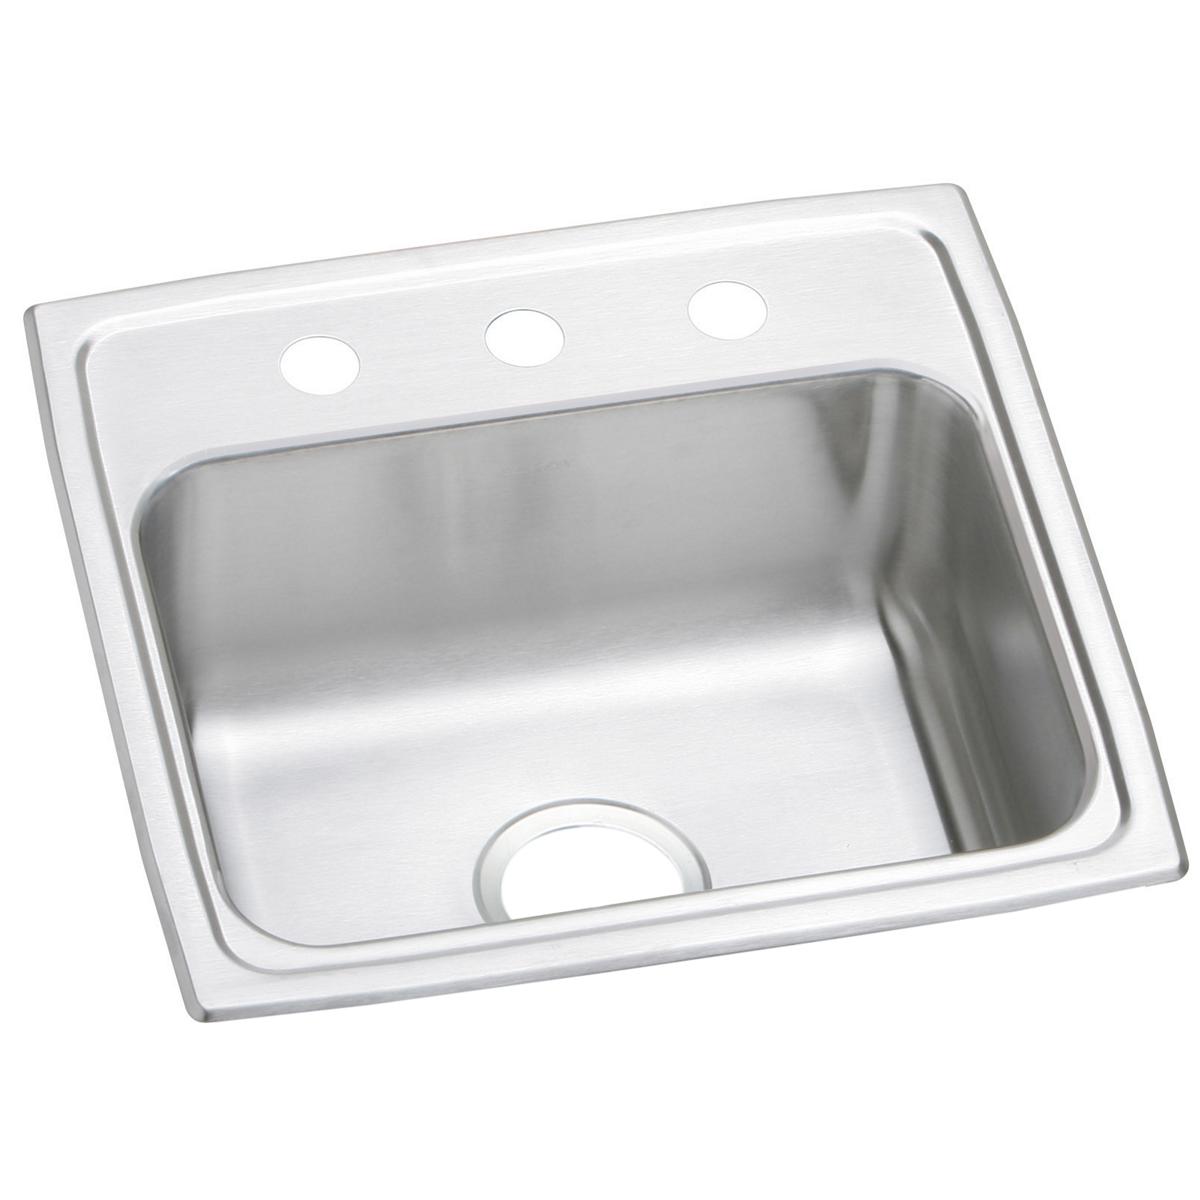 Elkay Celebrity Stainless Steel 19" x 18" x 7-1/8" Single Bowl Drop-in Sink